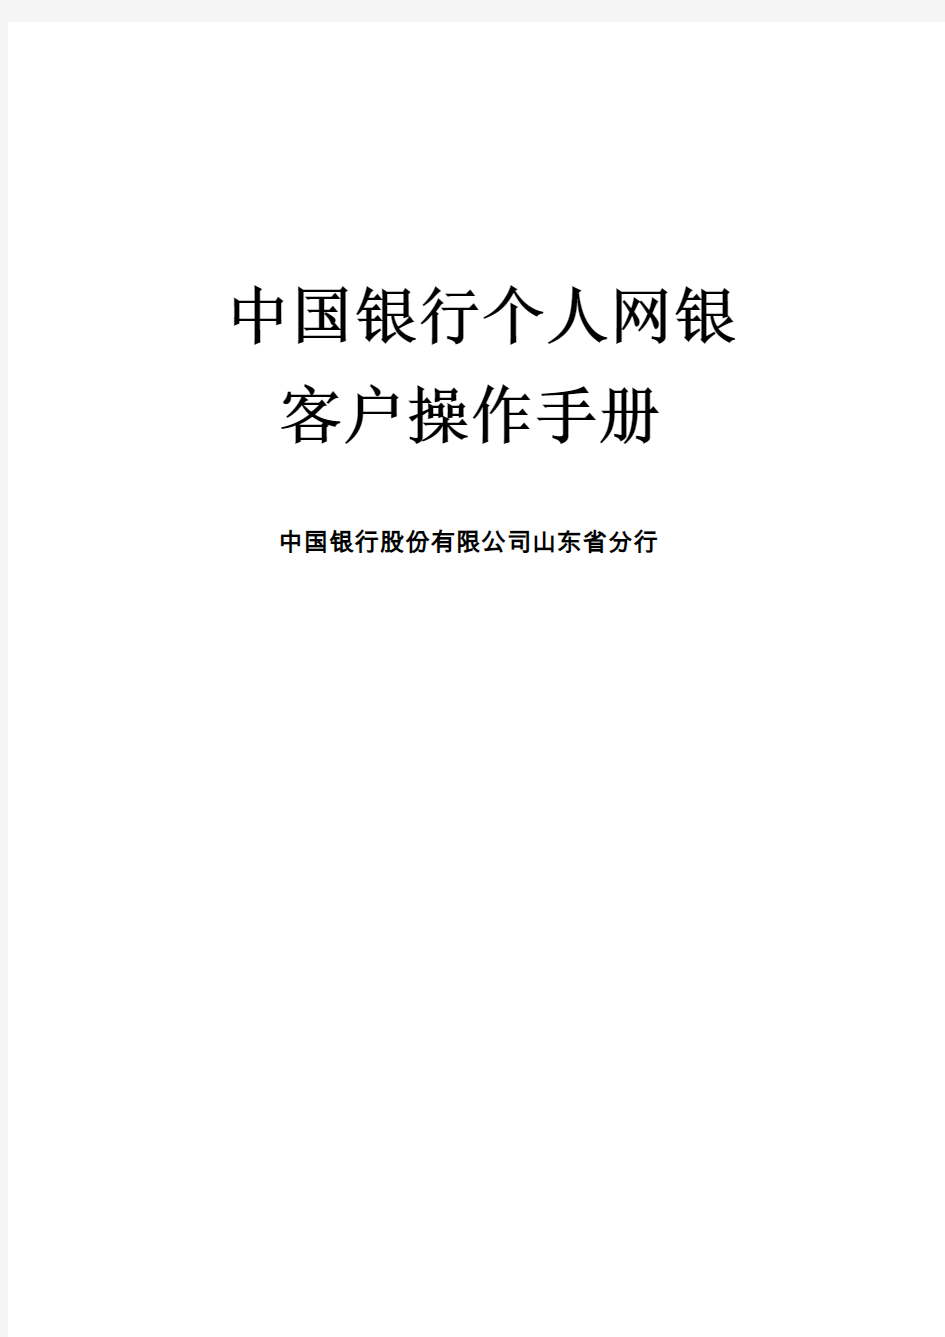 中国银行个人网银客户操作手册